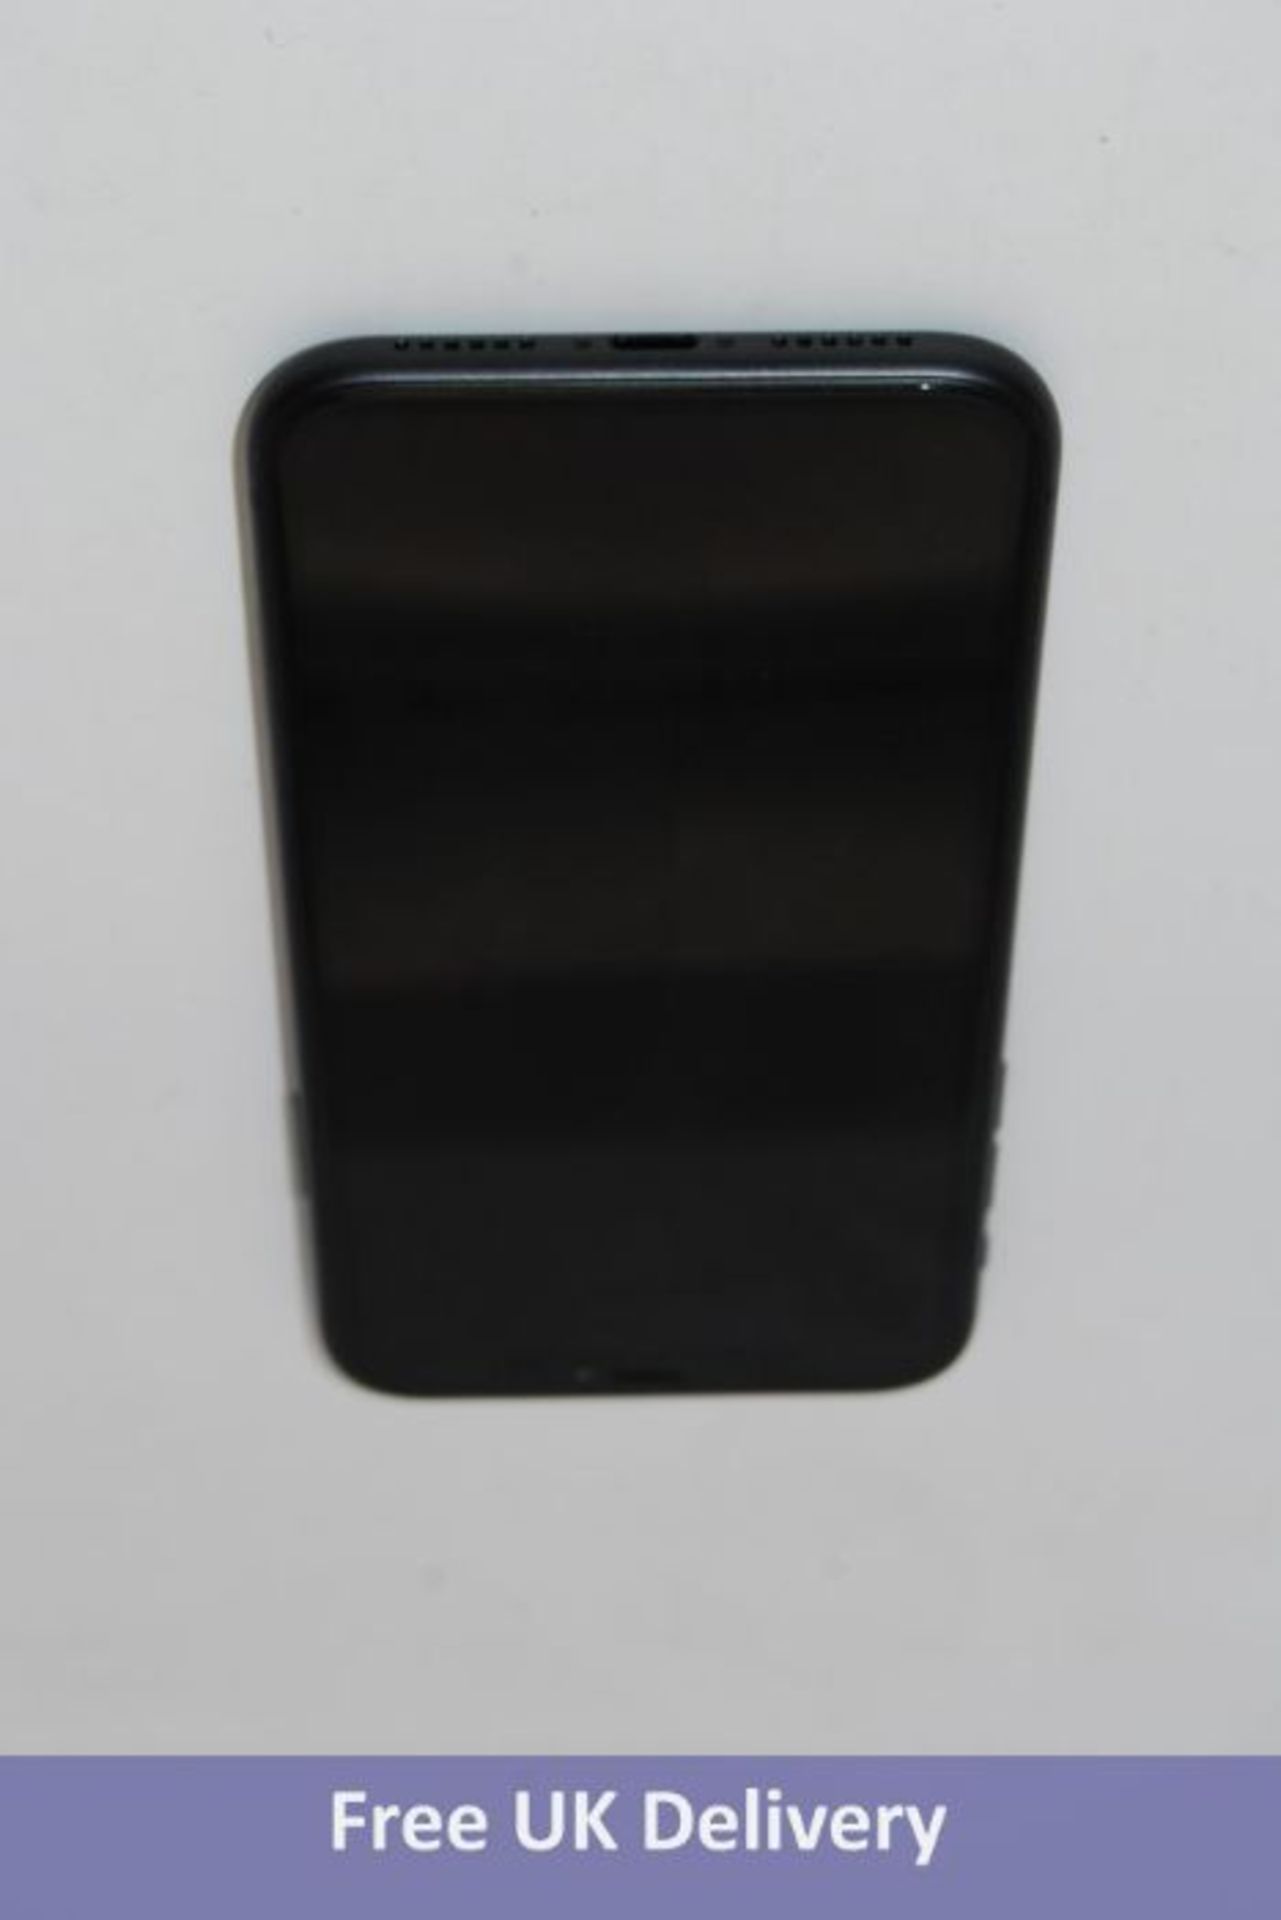 Apple iPhone 11, 64GB, Black. Used, no box or accessories. Checkmend clear, ref. CM18749894-E09C2